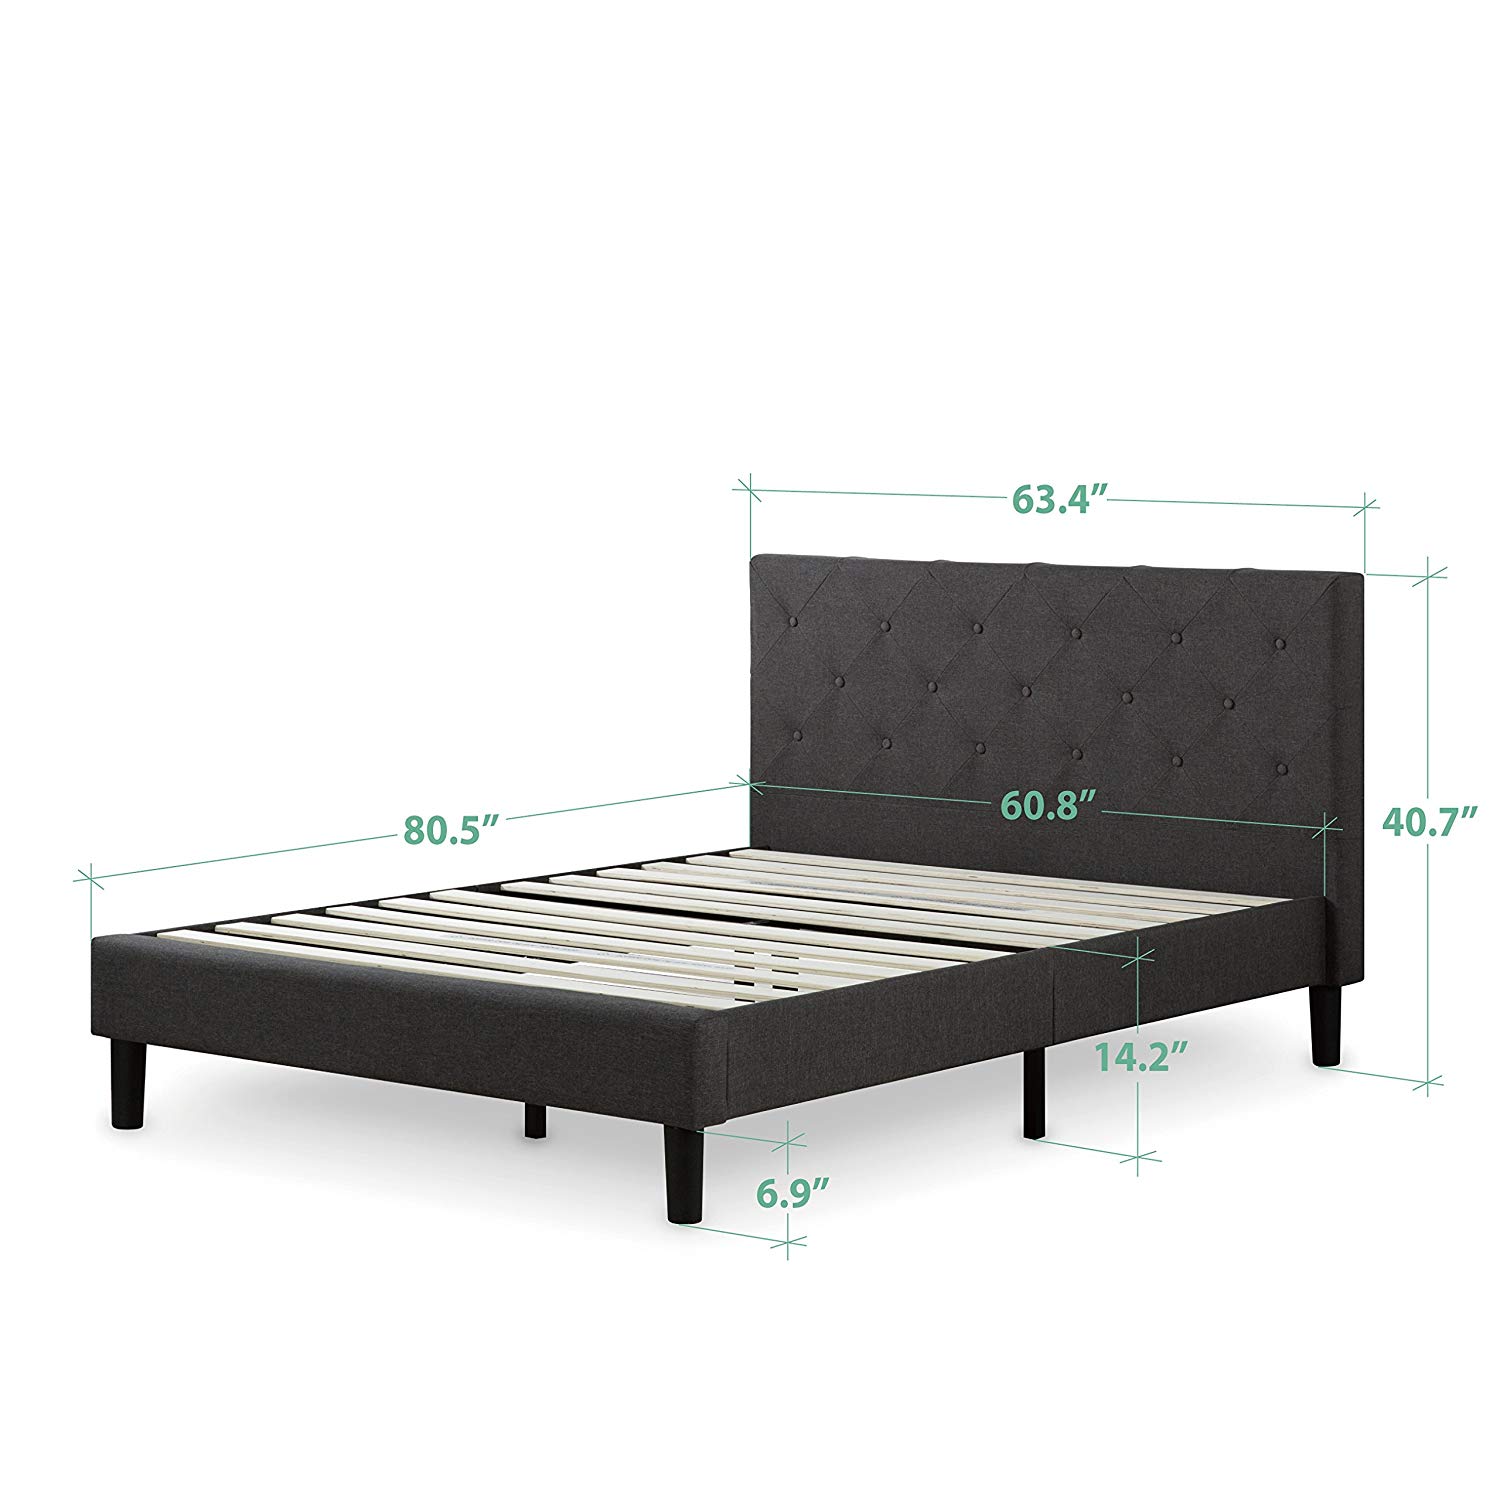 Top Rated Affordable Platform Beds You, Zinus Upholstered Detailed Platform Bed With Wooden Slats King